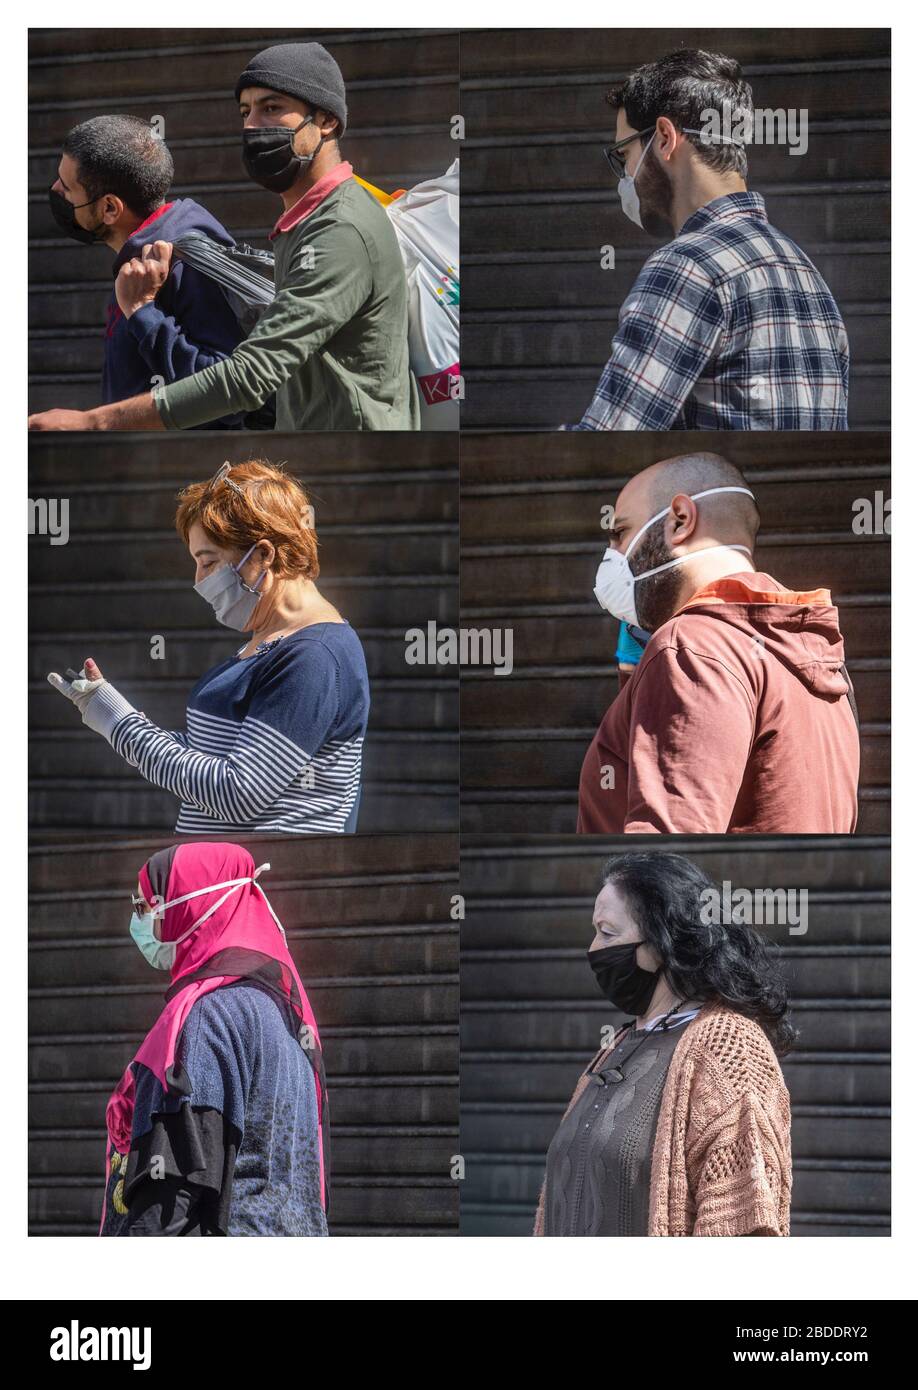 Beirut, Líbano. 6 de abril de 2020. Una imagen compuesta de personas en Beirut que usan máscaras quirúrgicas protectoras contra las infecciones por covid-19. Crédito: amer ghazzal/Alamy Live News Foto de stock